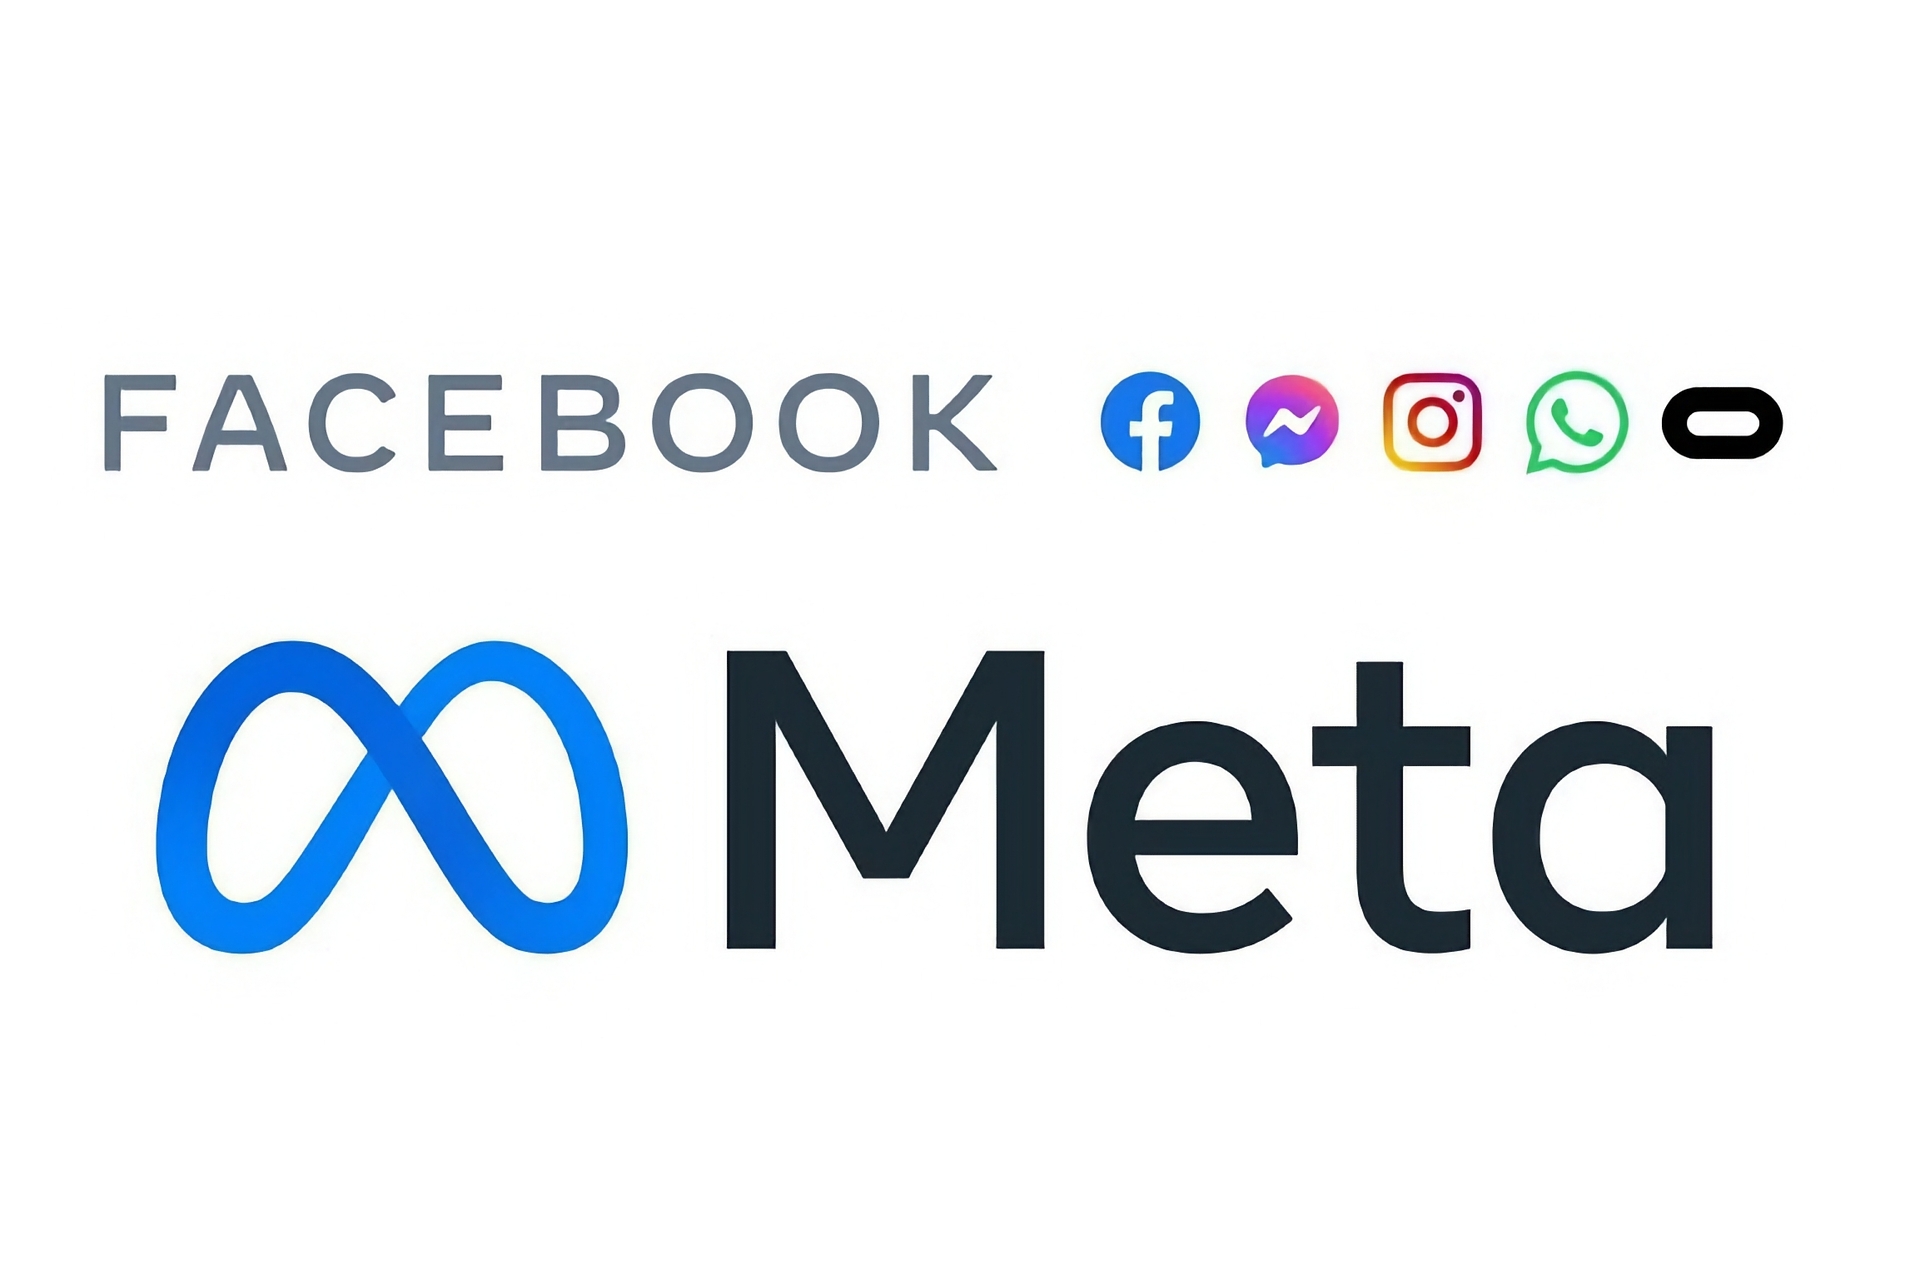 Facebook: logo chính thức của Meta, công ty sở hữu Facebook và các dịch vụ kỹ thuật số hoặc mạng xã hội lớn khác trên toàn cầu, chẳng hạn như Messenger, Instagram, WhatsApp và Oculus